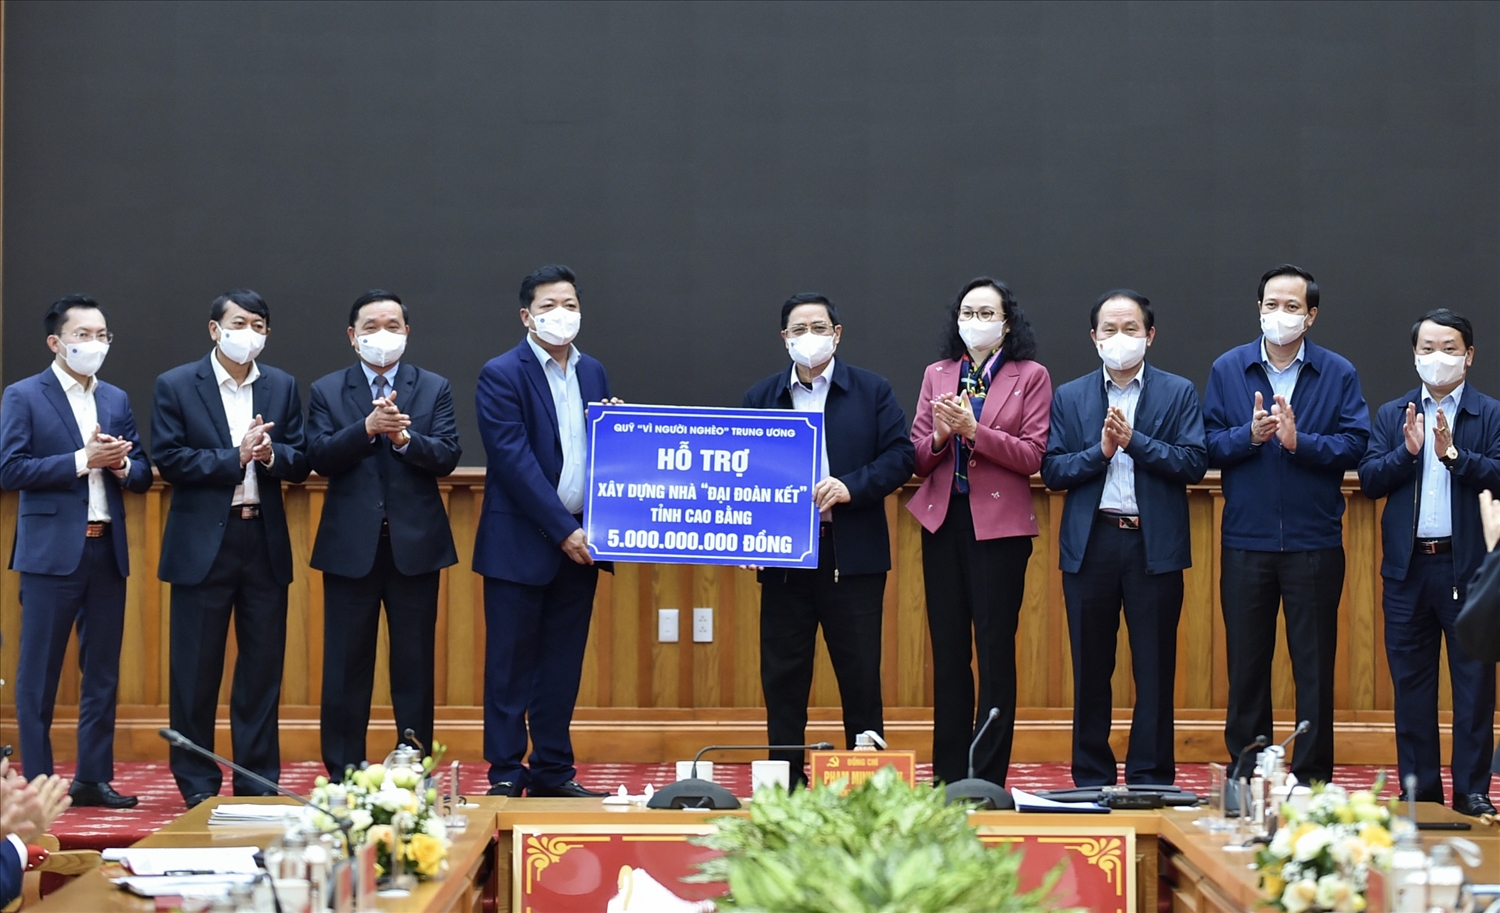 Thủ tướng Chính phủ và Đoàn công tác trao tượng trưng 100 căn nhà đại đoàn kết tặng tỉnh Cao Bằng, mỗi căn nhà trị giá 50 triệu đồng. Ảnh: VGP/Nhật Bắc